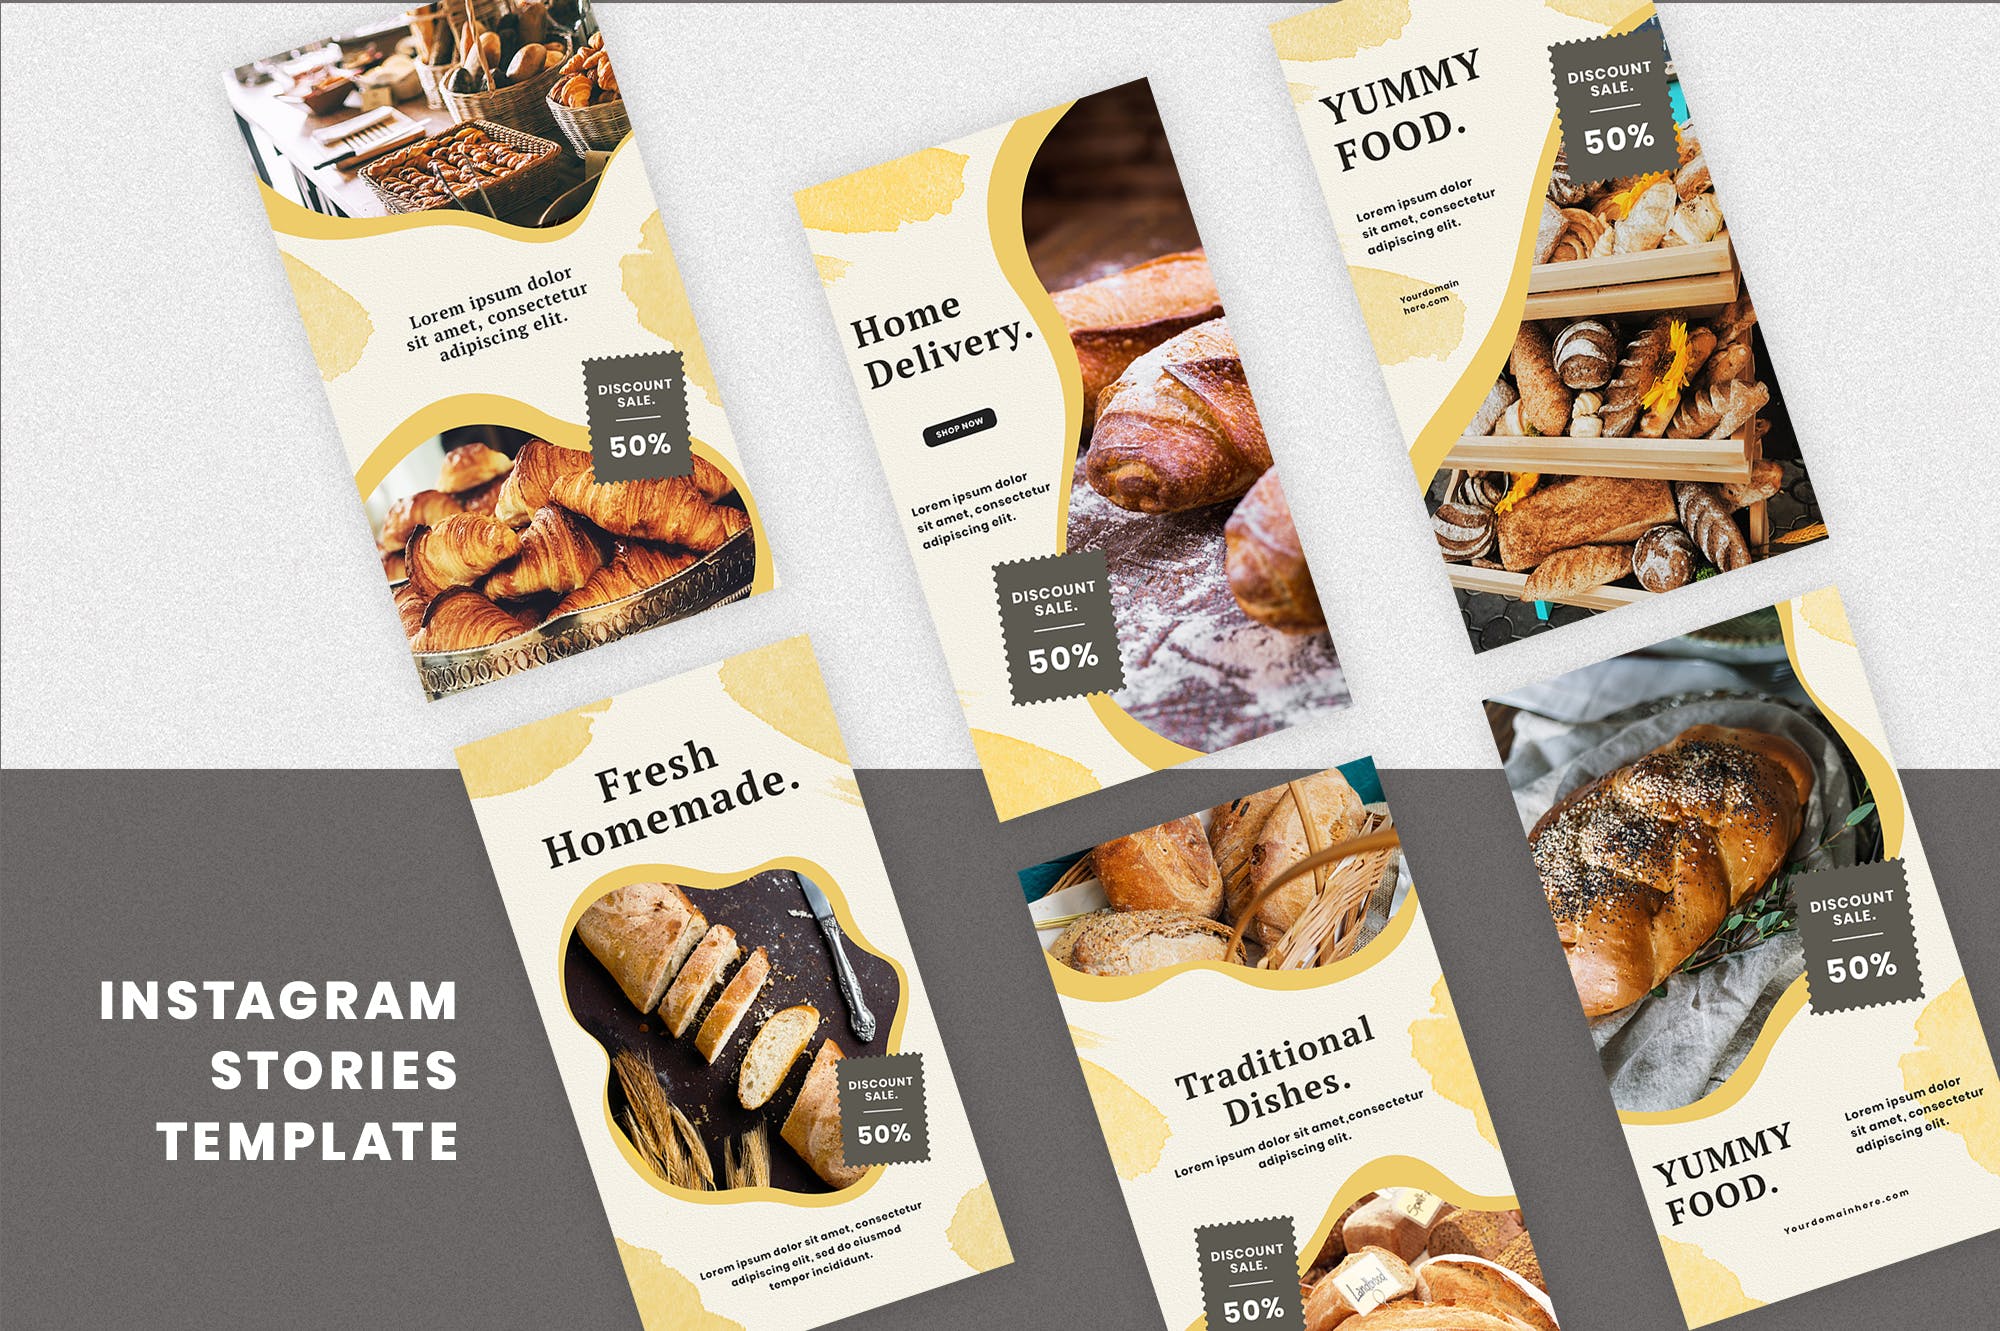 极简面包坊社交媒体Instagram定制故事贴图模板 Form of bread Instagram Stories Template设计素材模板